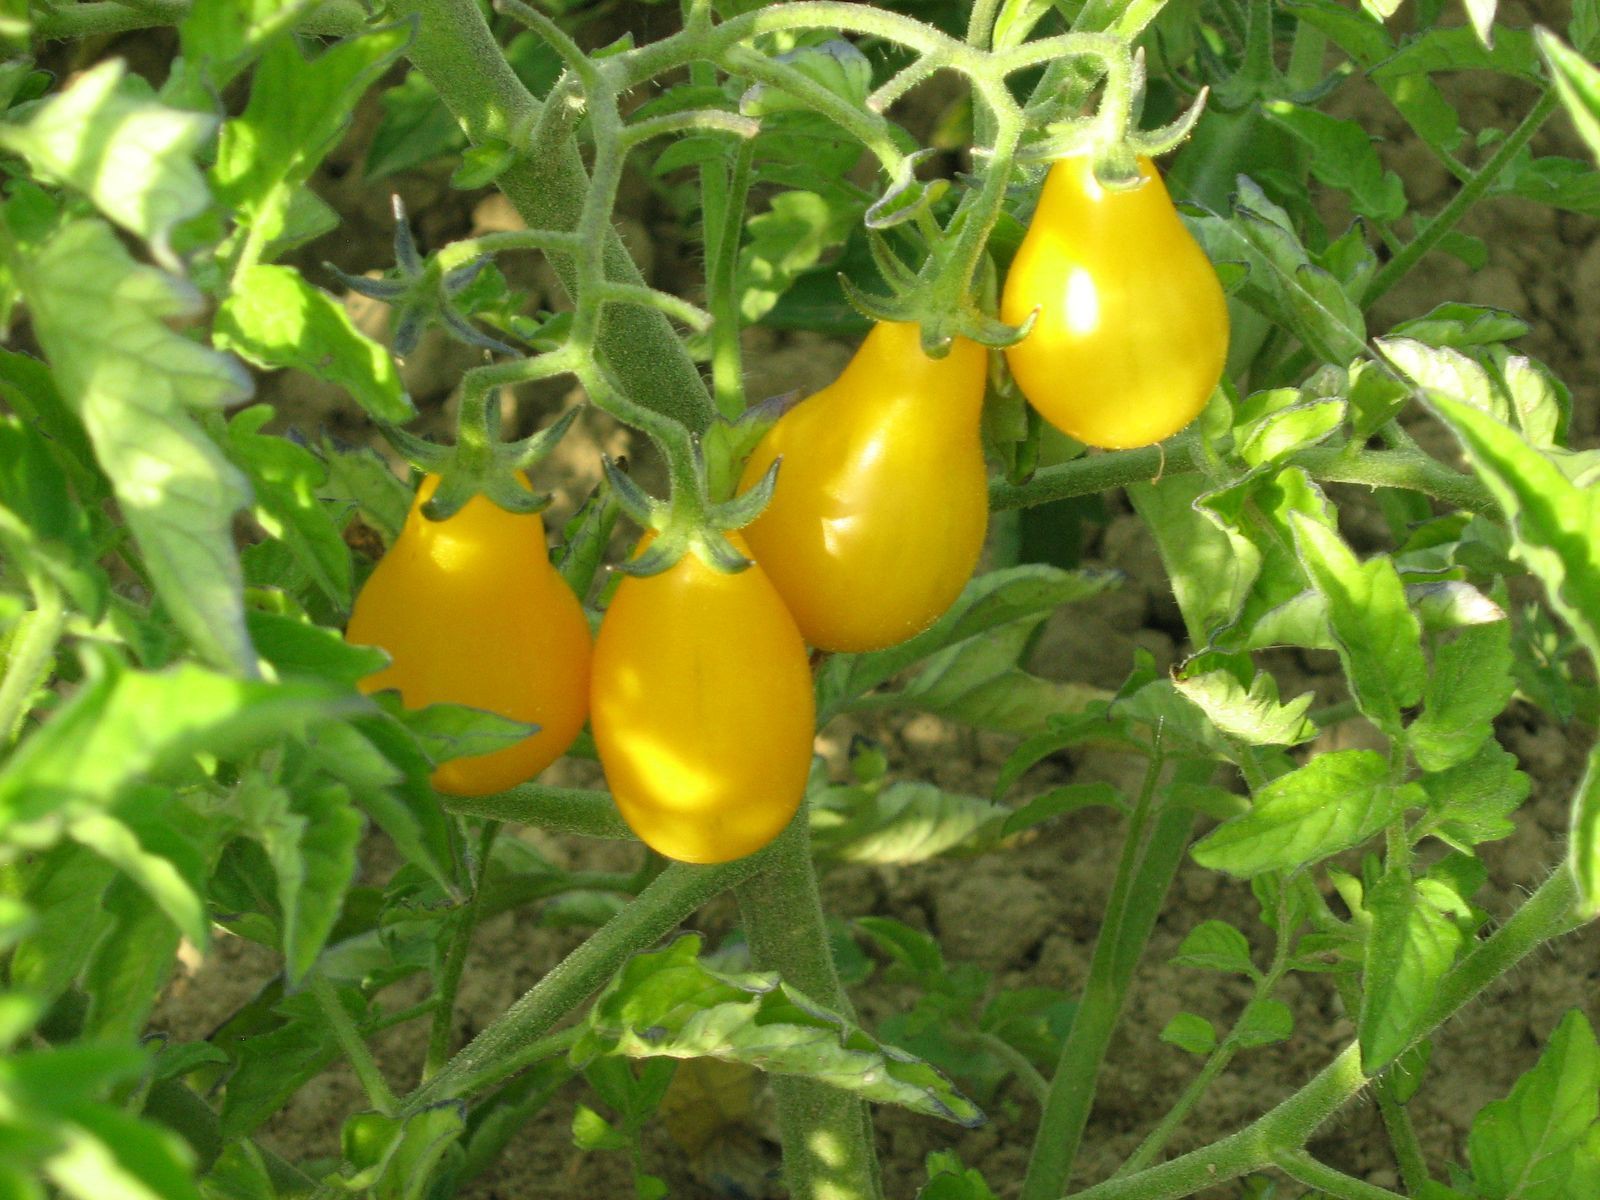 Les bienfaits de la tomate - Tomates et concombres de nos régions